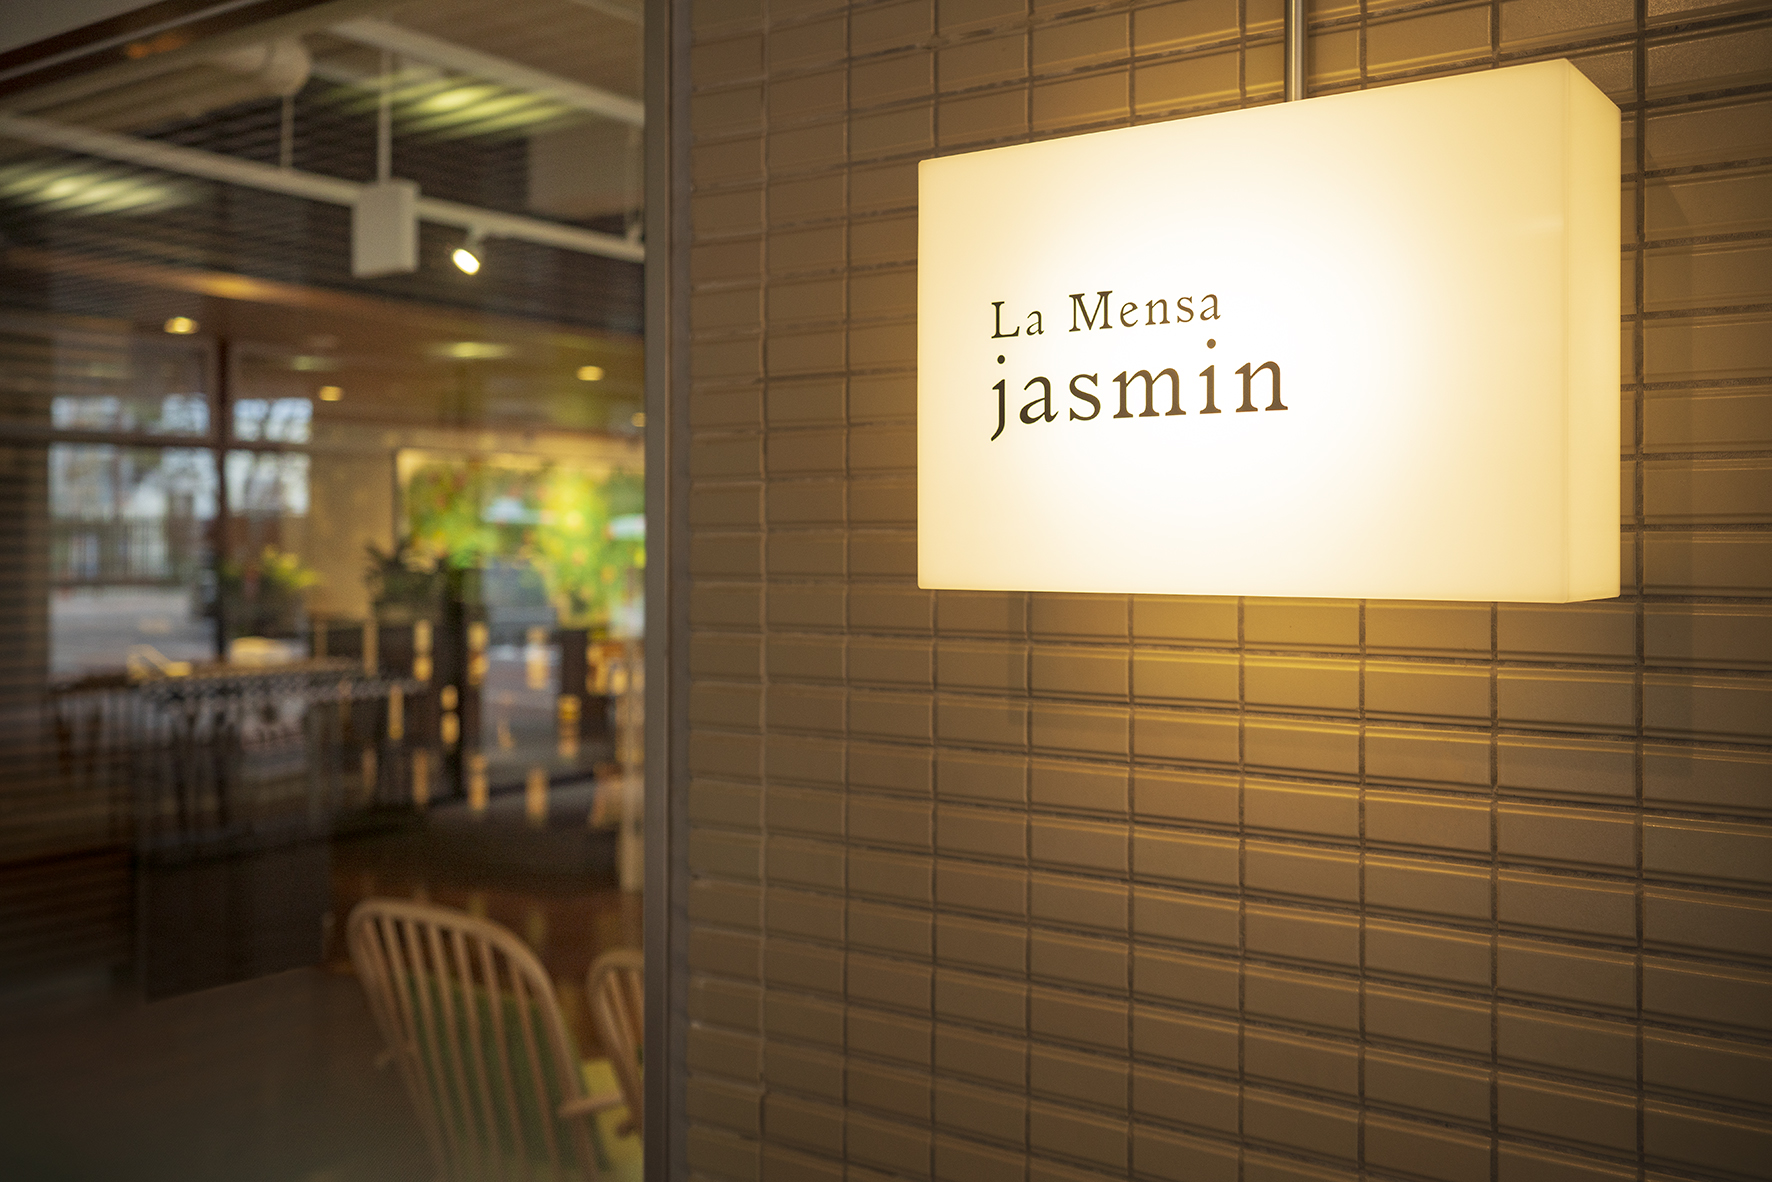 店名の「La Mensa」とは、イタリア語で学生食堂という意味